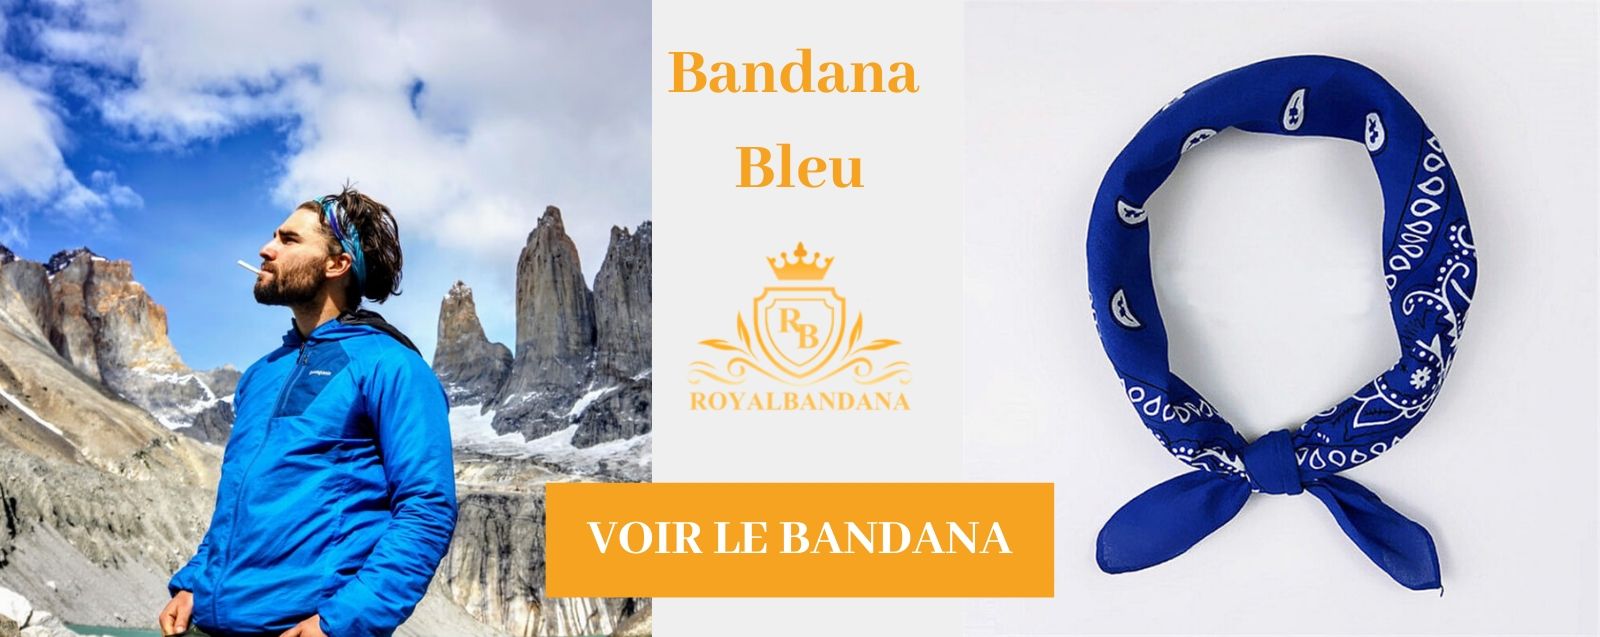 voir bandana bleu royalbandana